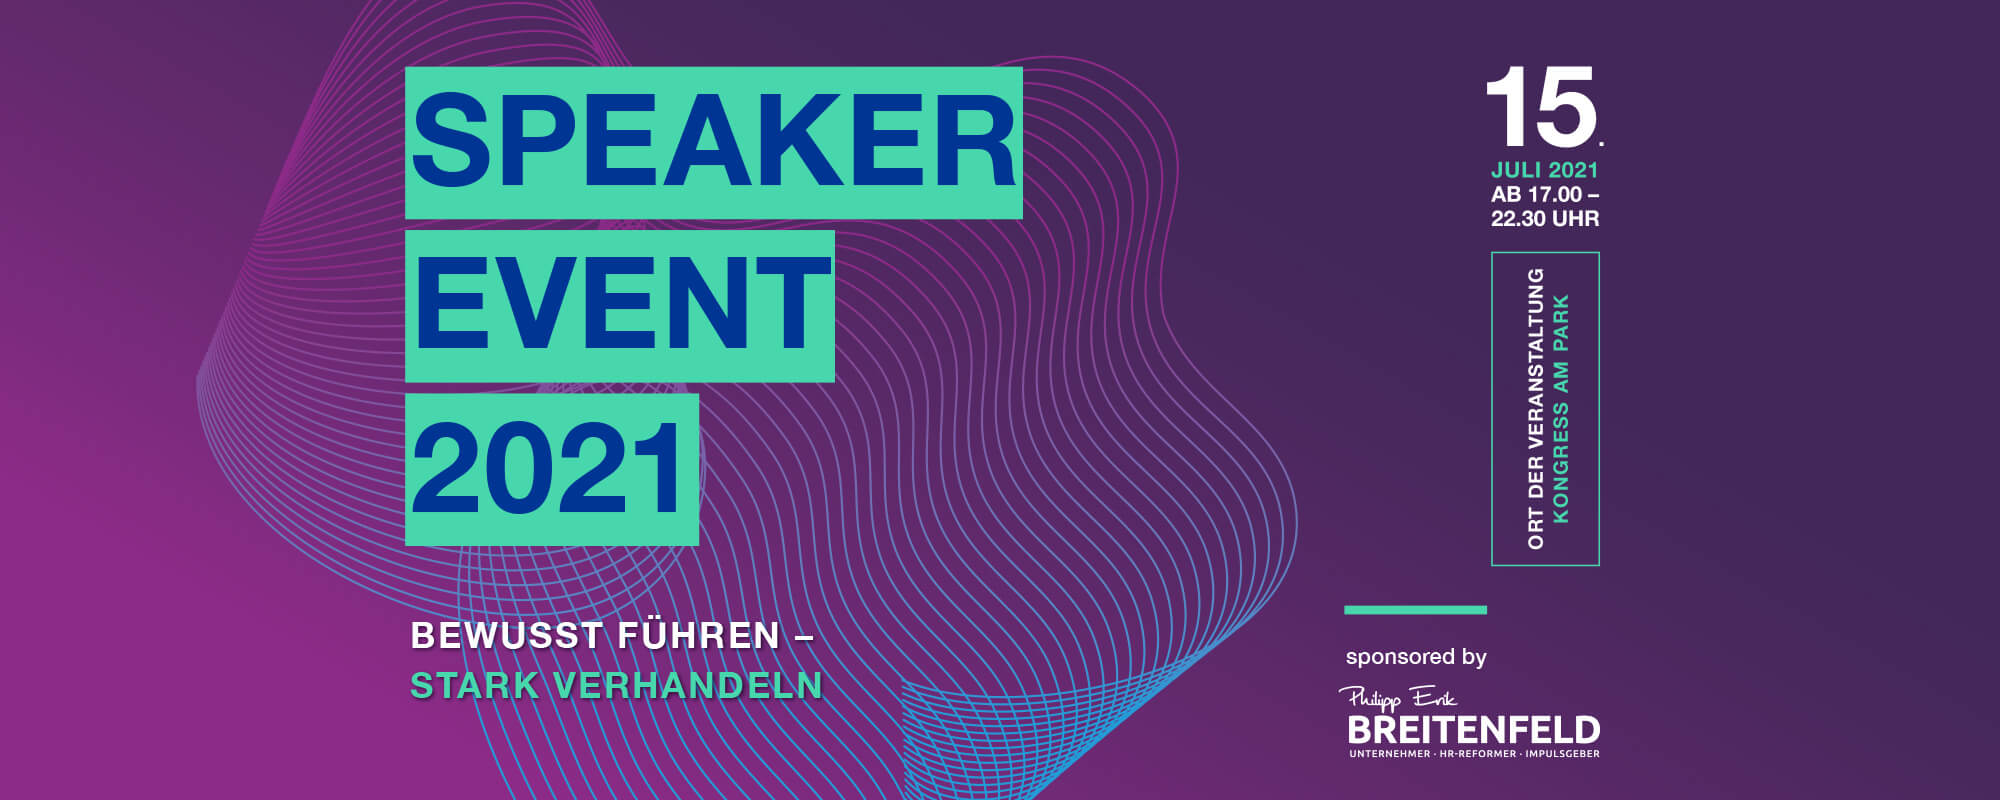 Speaker Event 2021, sponsored by Breitenfeld